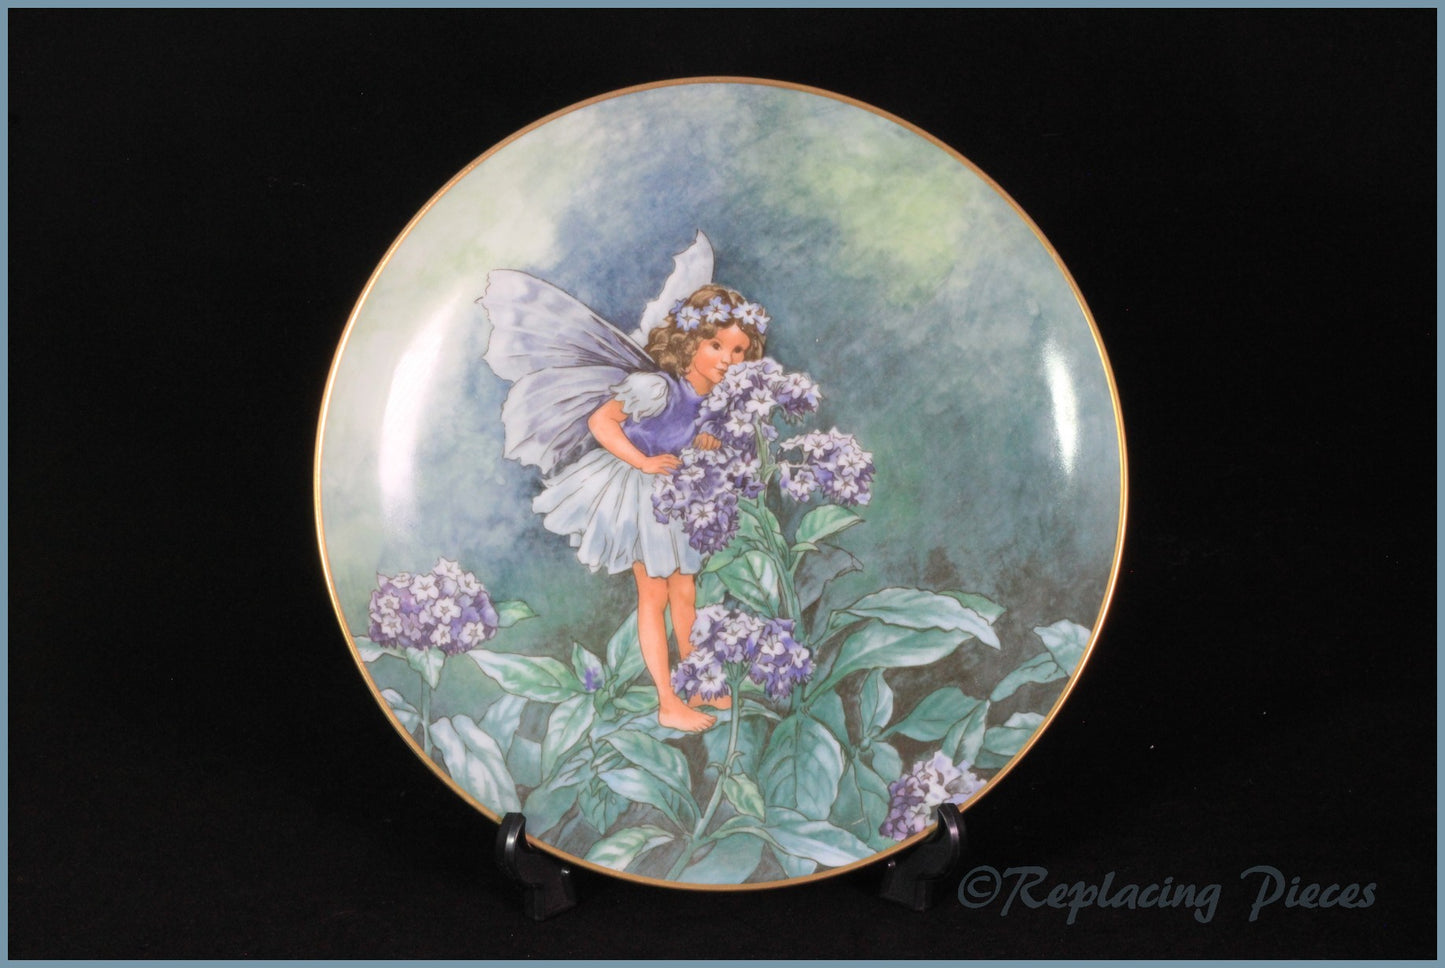 Villeroy & Boch - Flower Fairies - The Heliotrope Fairy